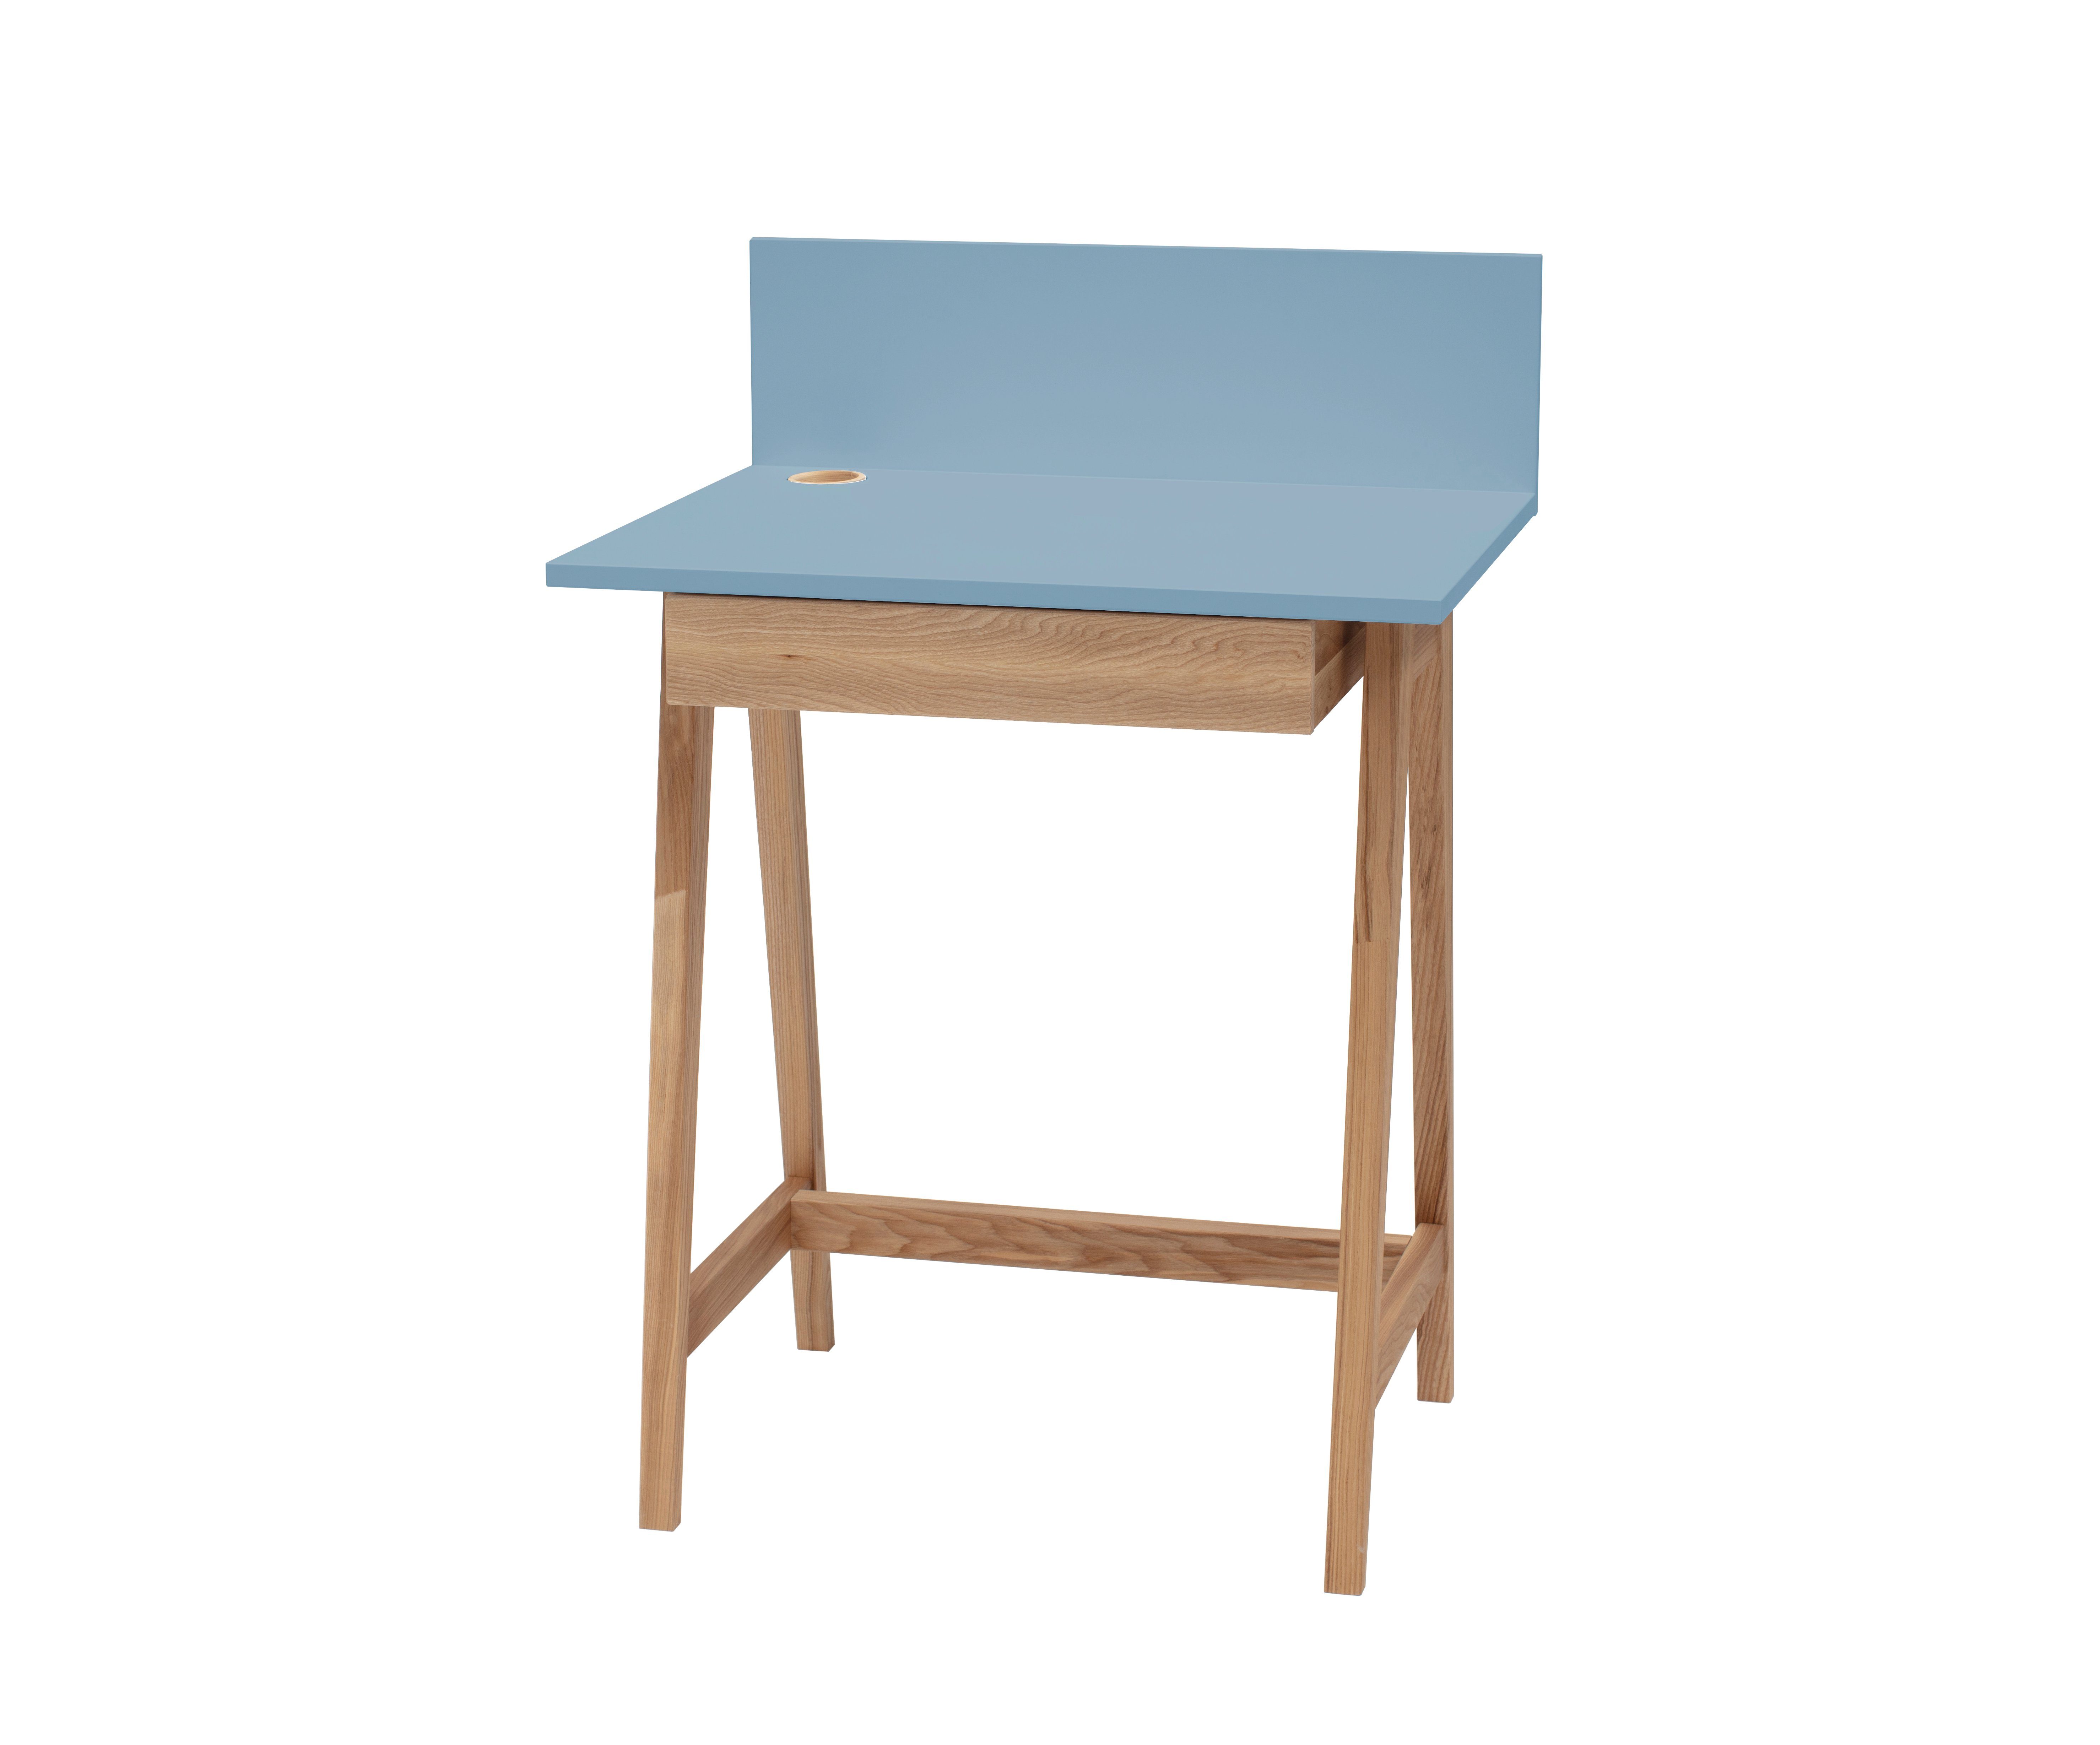 Siblo Schreibtisch Kinderschreibtisch Luke mit Schublade - Bunter Schreibtisch - minimalistisches Design - Kinderzimmer - MDF-Platte - Eschenholz (Kinderschreibtisch Luke mit Schublade) Blau